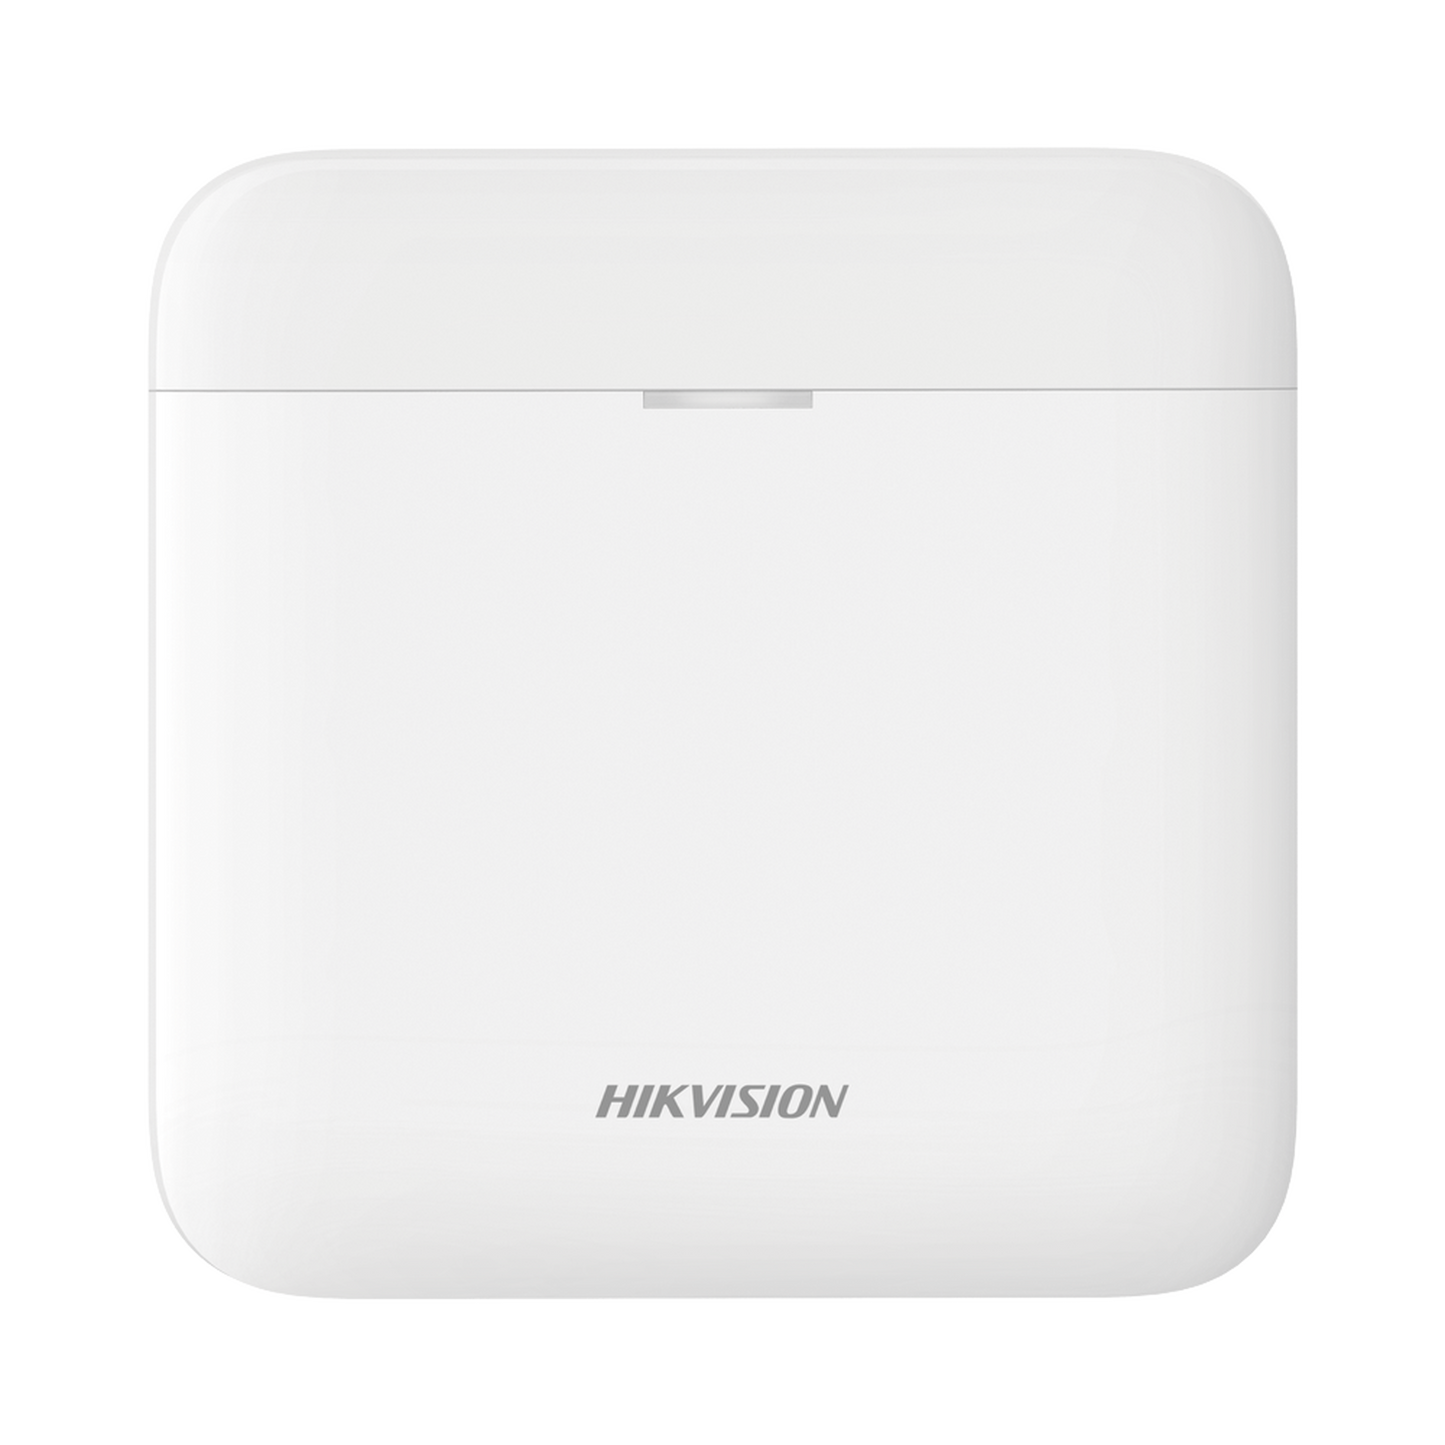 (AX PRO) Panel de Alarma Inalámbrico de Hikvision, Soporta 96 Zonas, GSM 3G/4G, Wi-Fi y Ethernet, Compatible con los Accesorios AX PRO.